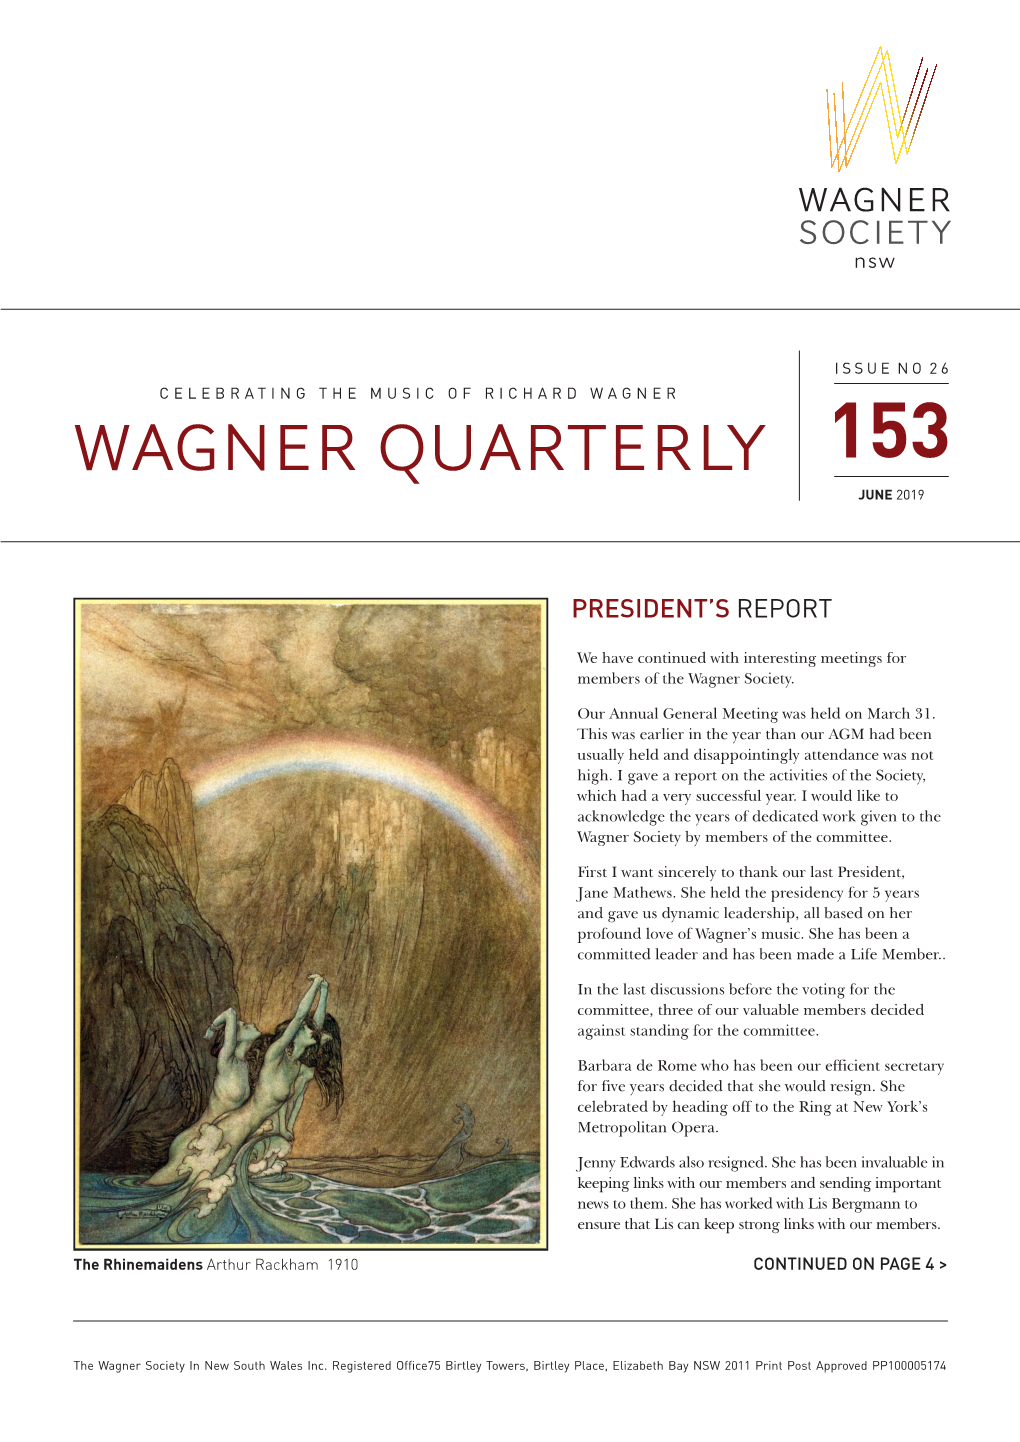 Wagner Quarterly 153, June 2019